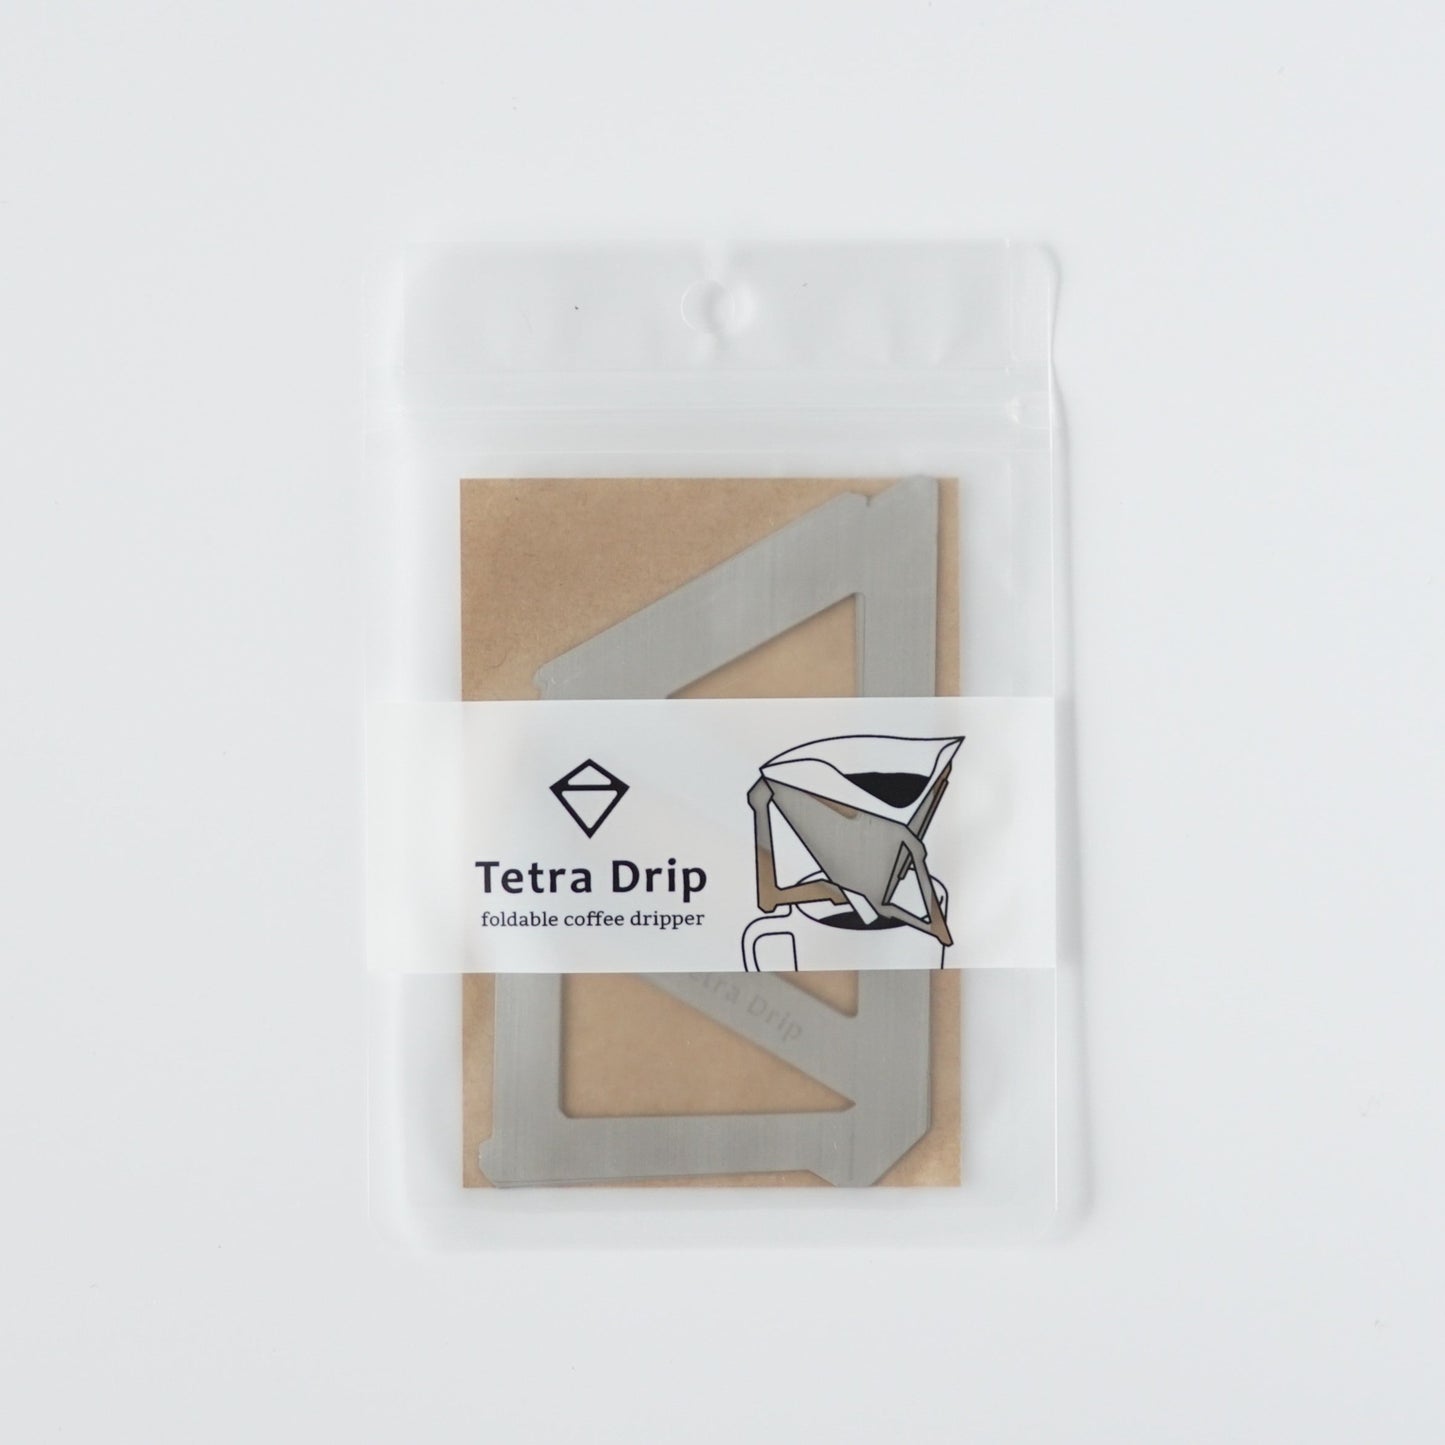 Tetra Drip Coffee Dripper